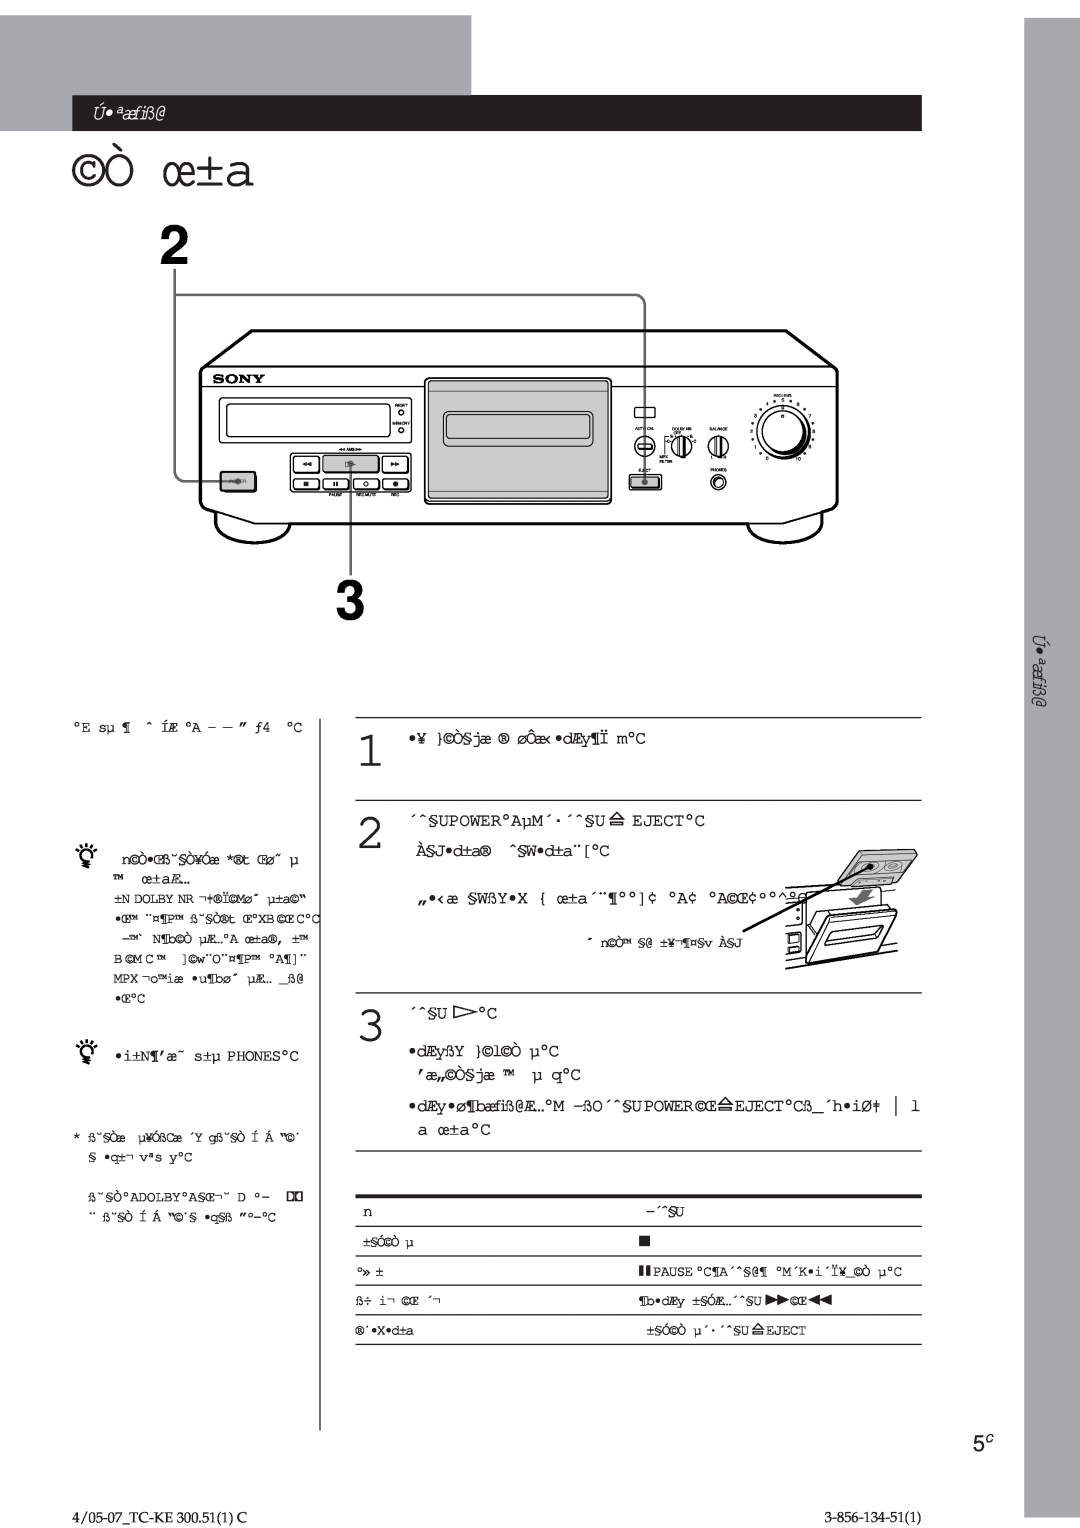 Sony TC-KE300 operating instructions Ò œ±a, Úªæﬁß@, Ú ªæﬁß@ 